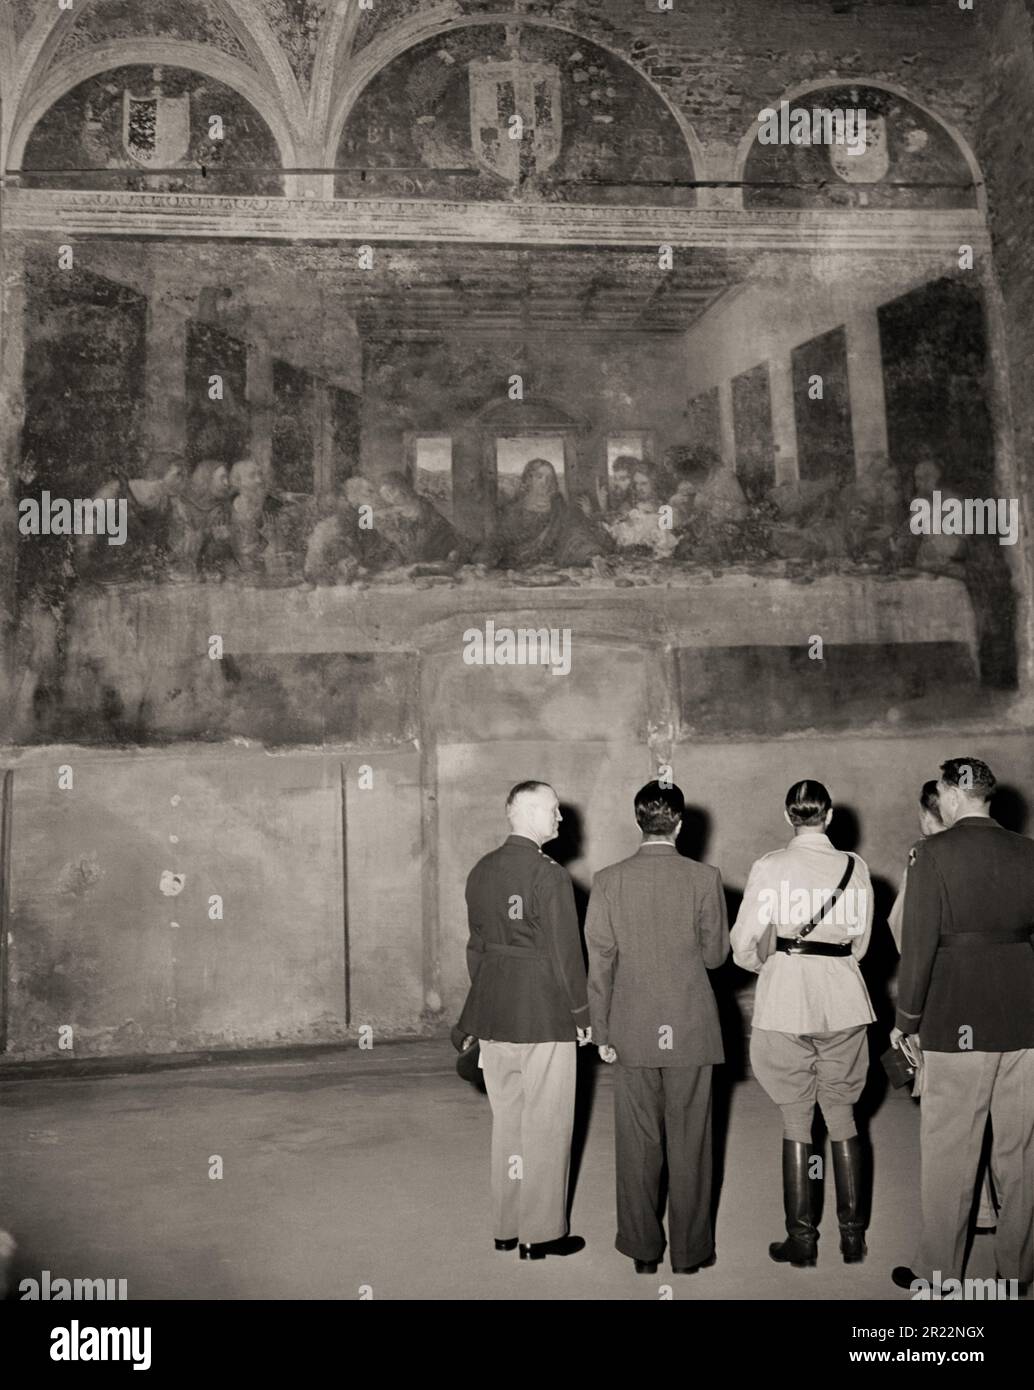 1945 , 25 . juni , MAILAND , ITALIEN : an den letzten Tagen des Zweiten Weltkriegs . Amerikanische und britische Offiziere sehen LEONARDO Da VINCIS Meisterwerk "das letzte Abendmahl " ( L'ULTIMA CENA ) in der Kirche Santa Maria delle Grazie in Mailand . Vom Krieg verschont und unbeschädigt. Wie durch ein Wunder überlebte man einen Bombenanschlag der Alliierten (nur die Mauer mit dem Fresko blieb in den Trümmern unversehrt, während das gesamte Kloster der Madonna delle Grazie zu Boden gerissen wurde). Leonardo da Vincis berühmtes Fresko wird vom britischen Feldmarschall Sir HAROLD R.L.G. bewundert ALEXANDER ( trägt Sam Browne Gürtel - Rupert Leofric George, 189 Stockfoto